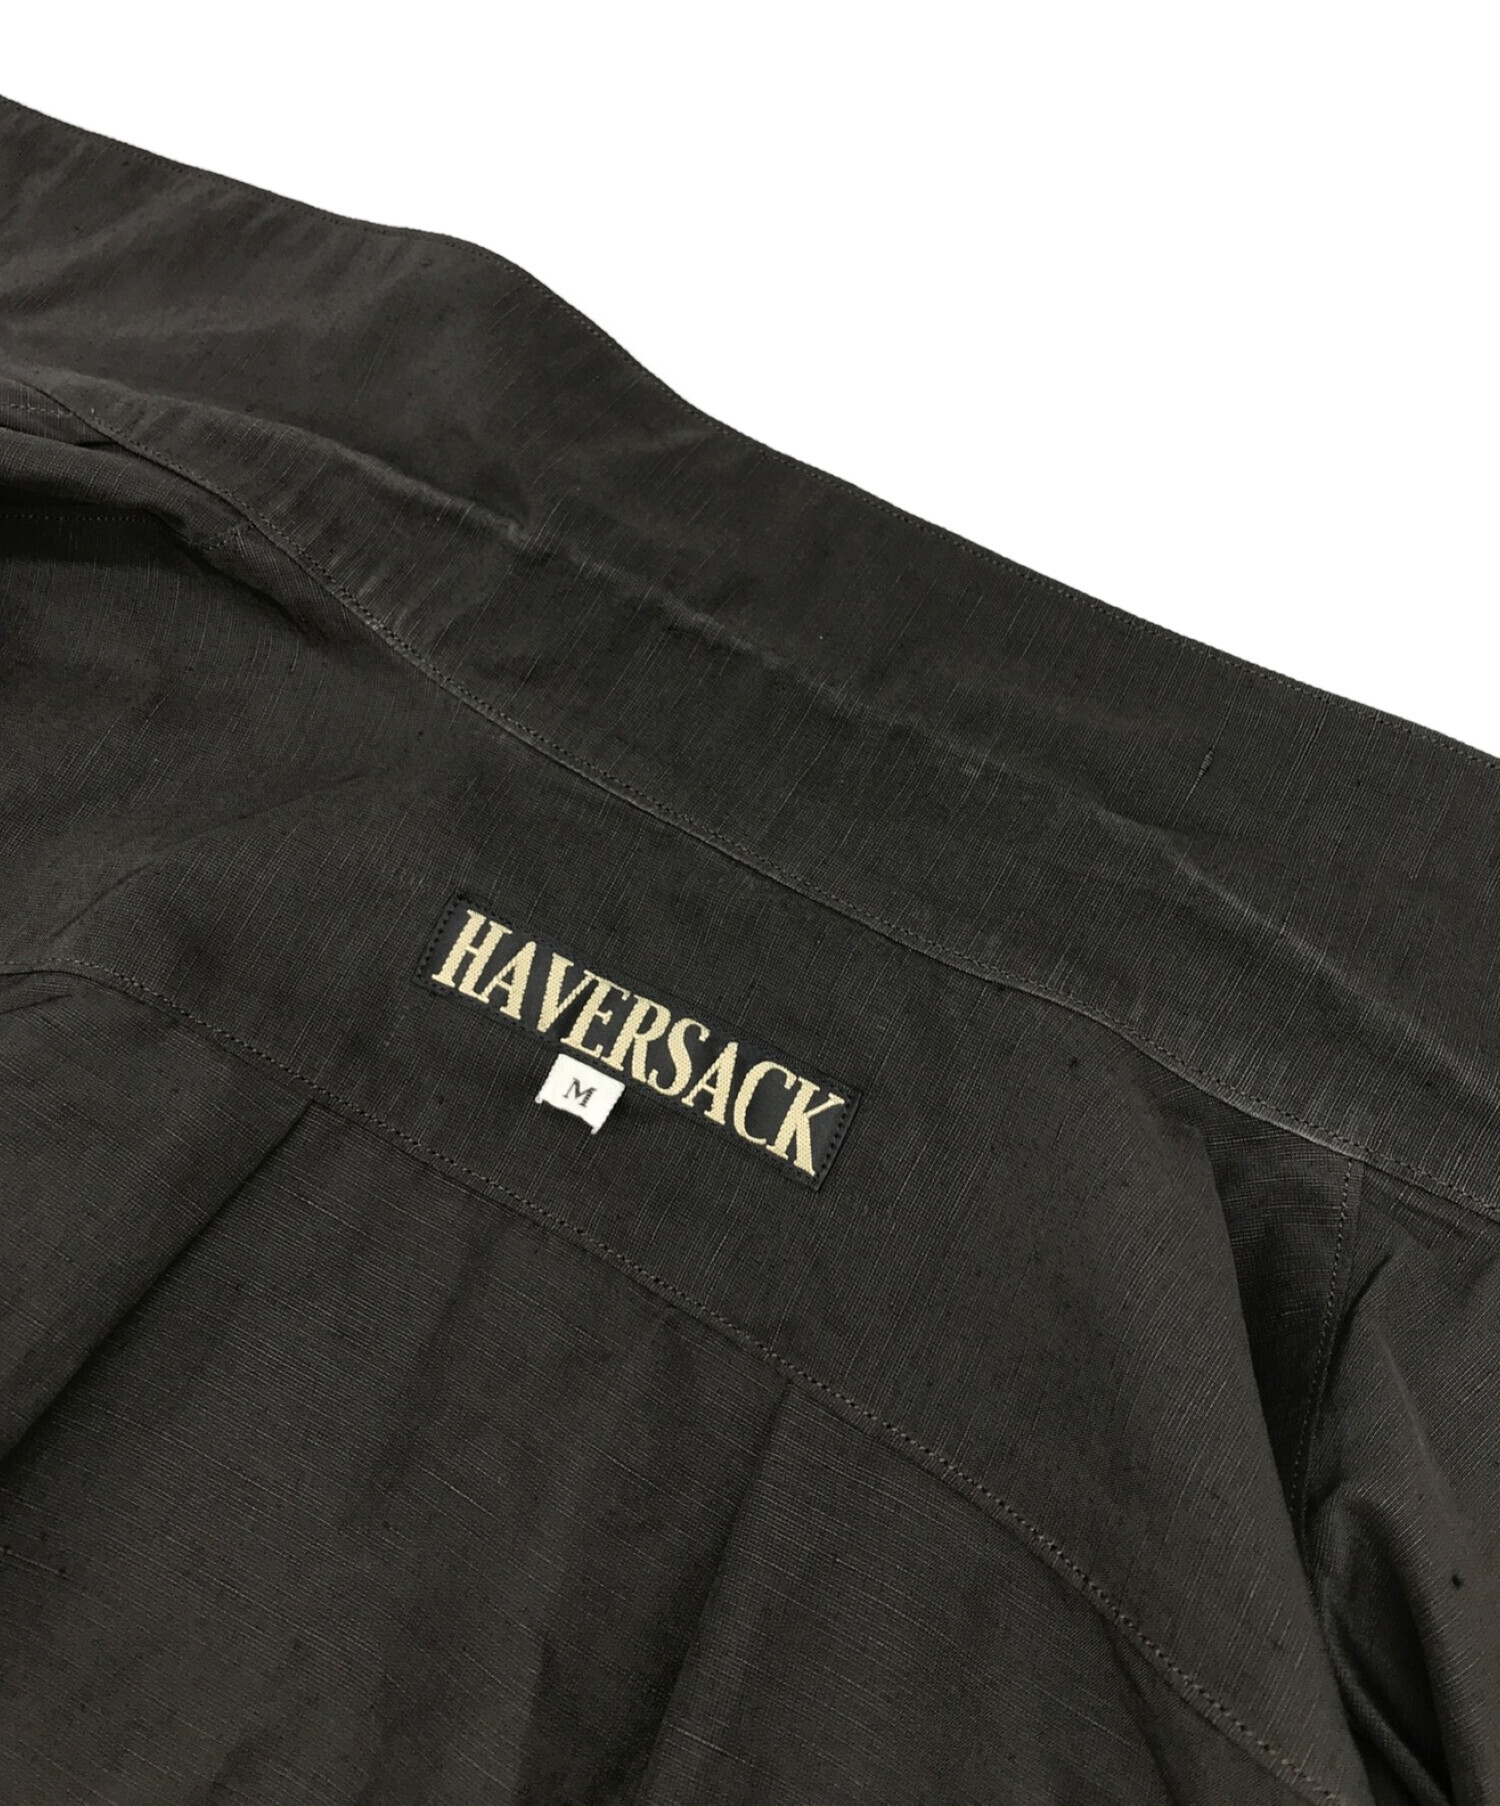 HAVERSACK (ハバーサック) 強撚ポプリン半袖シャツ ブラック サイズ:M